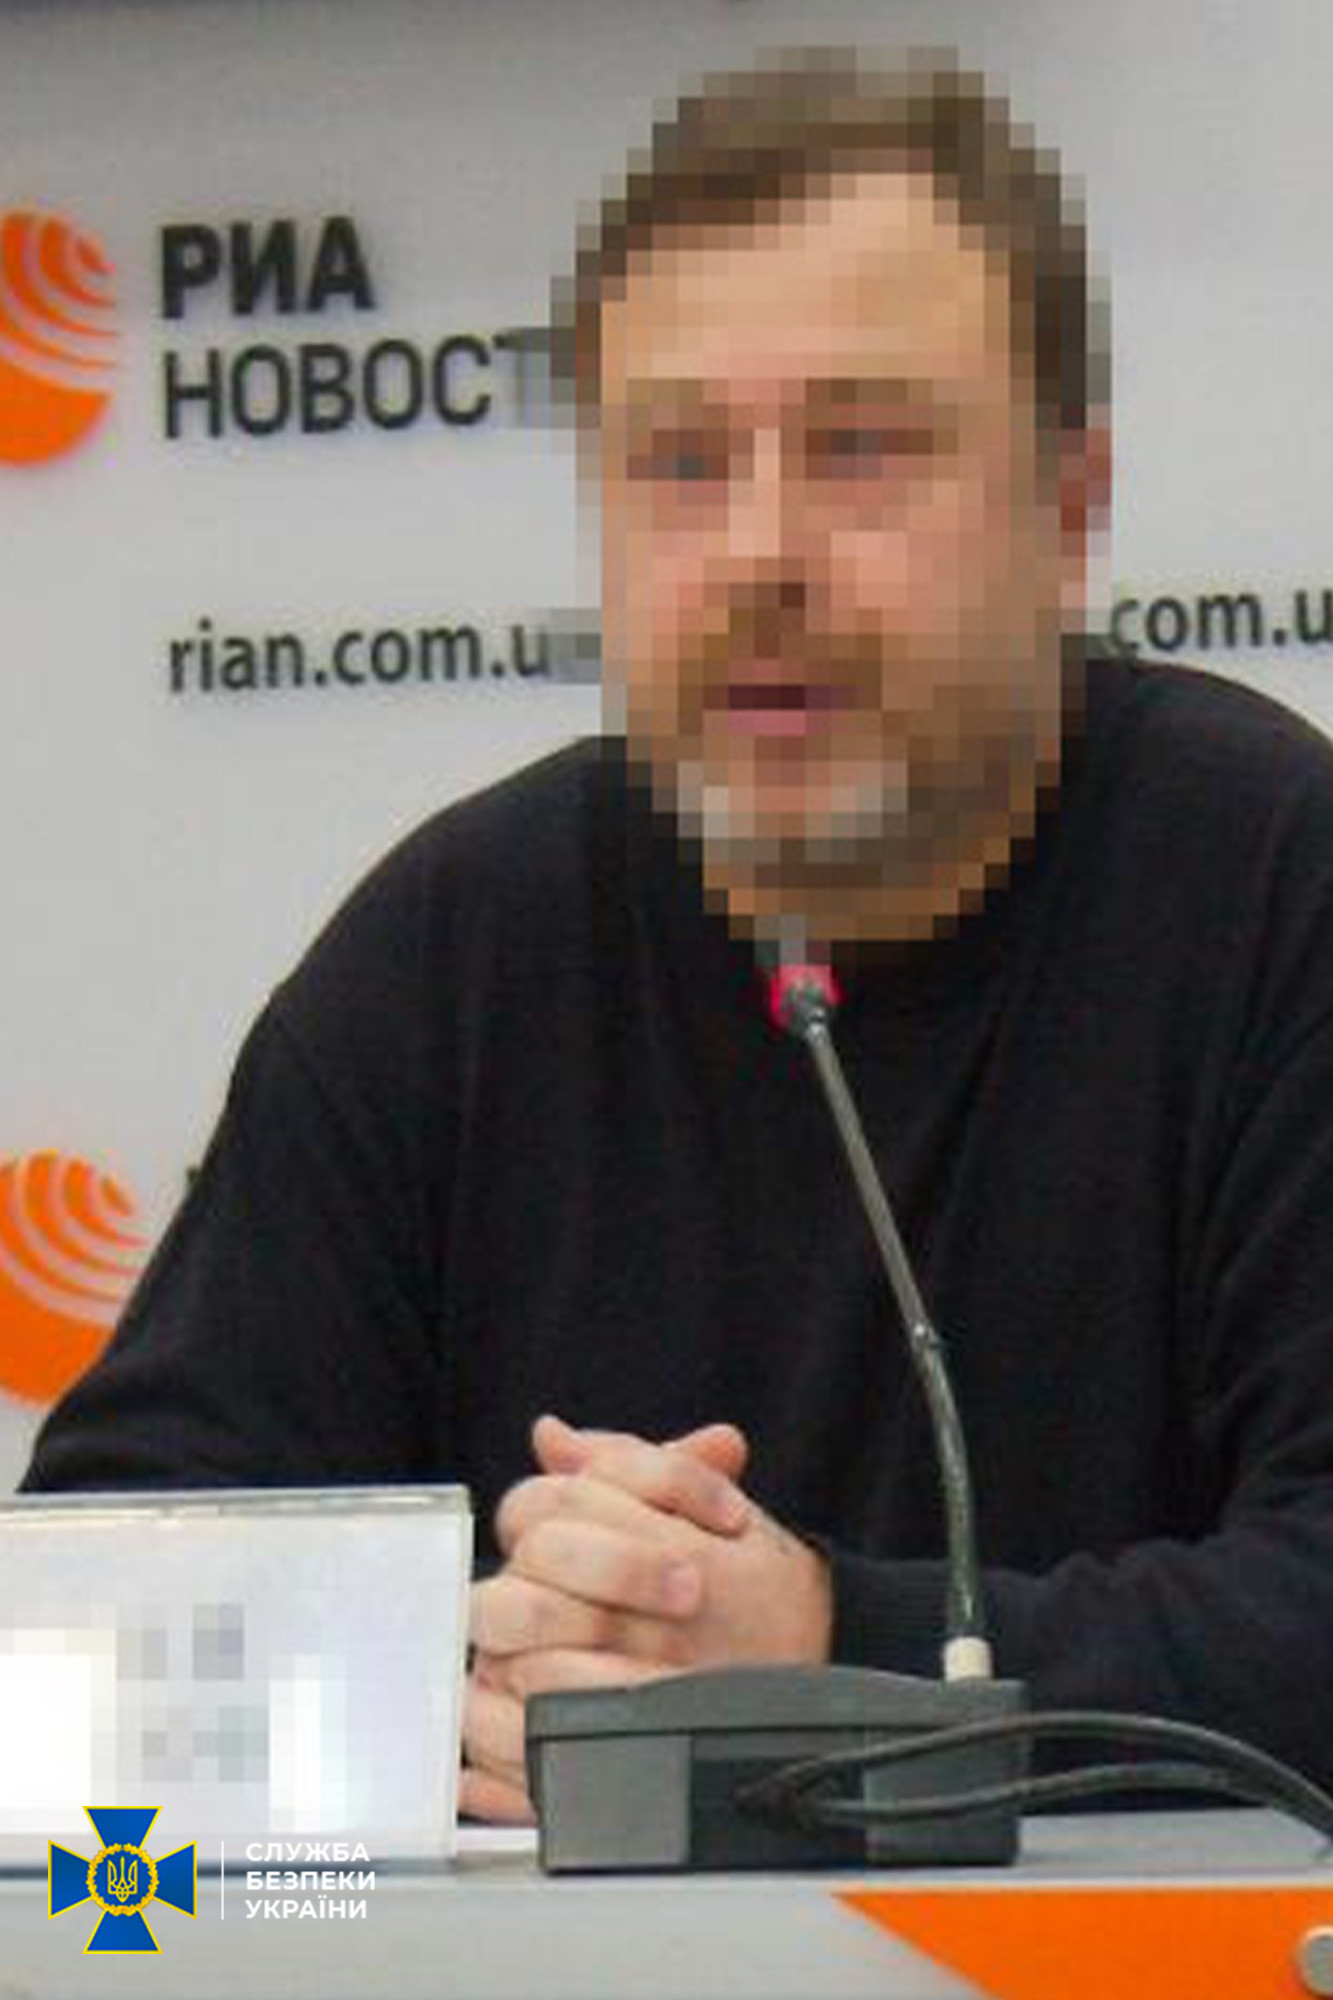 СБУ: в монастыре УПЦ в Киеве задержали «прокремлёвского блогера», подозреваемого в госизмене - 1 - изображение